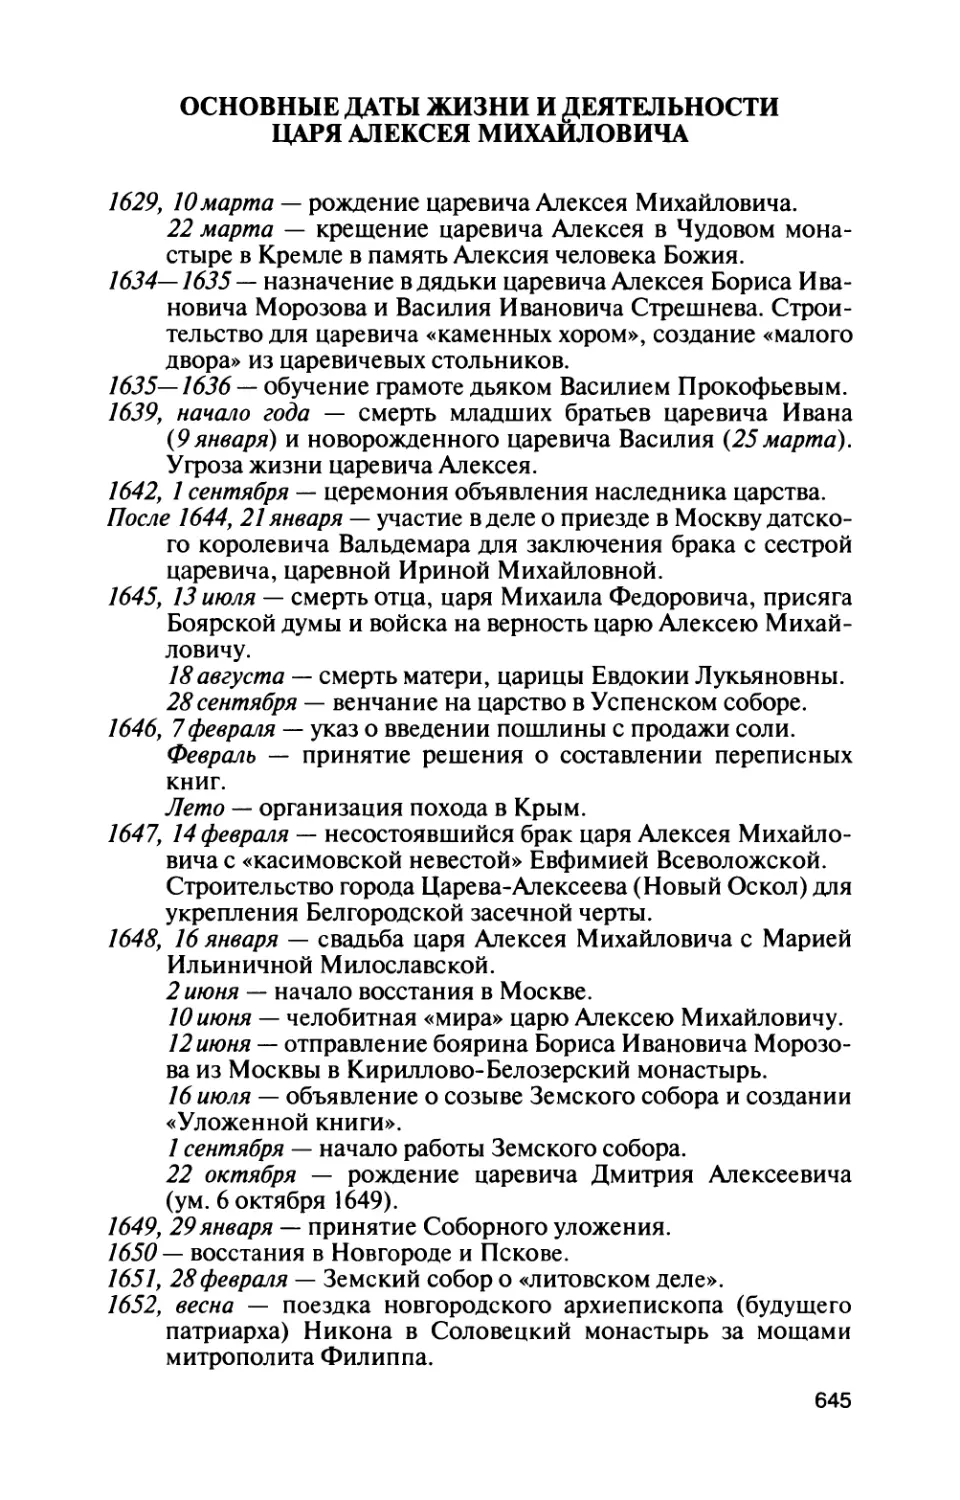 Основные даты жизни и деятельности царя Алексея Михайловича